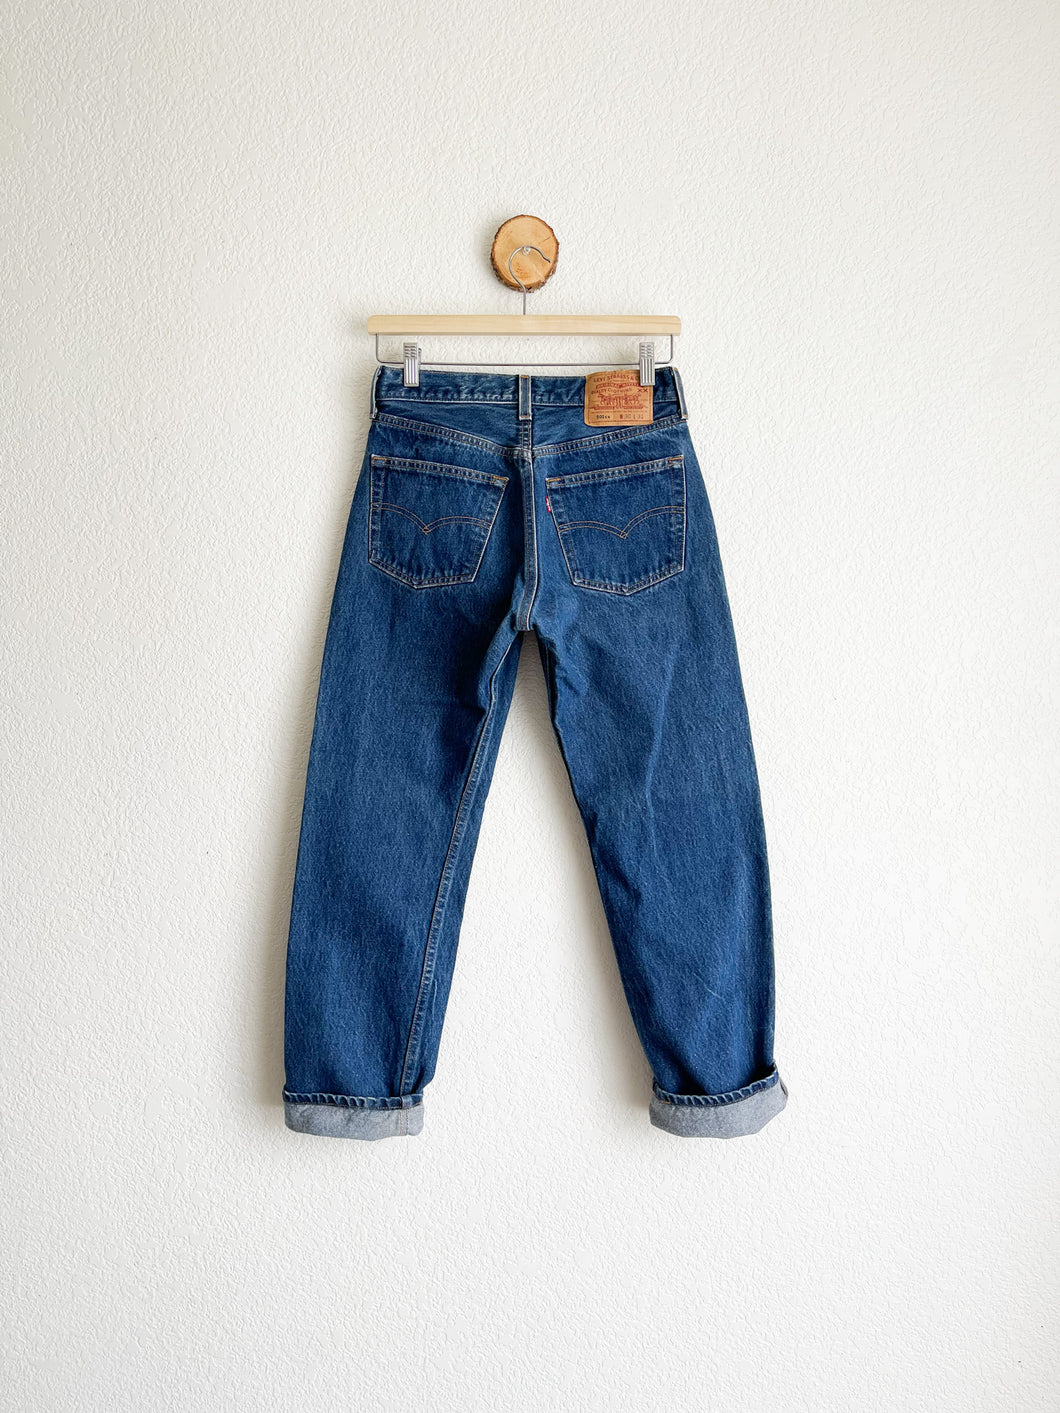 Vintage Levi's 501 Jeans - 27